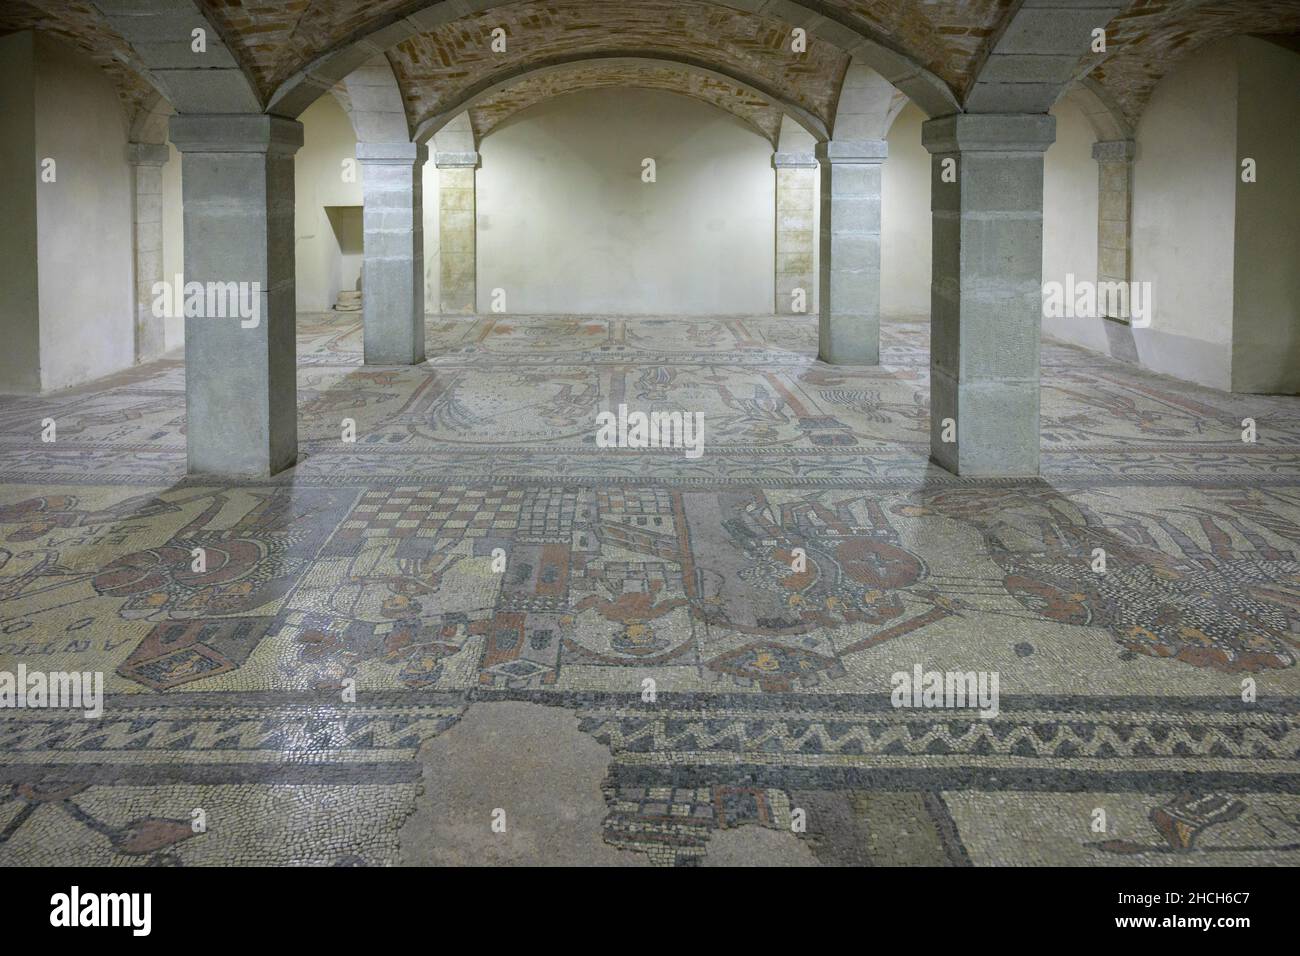 12th century mosaic floor in the Abbey of San Colombano, Bobbio, Piacenza, Italy Stock Photo